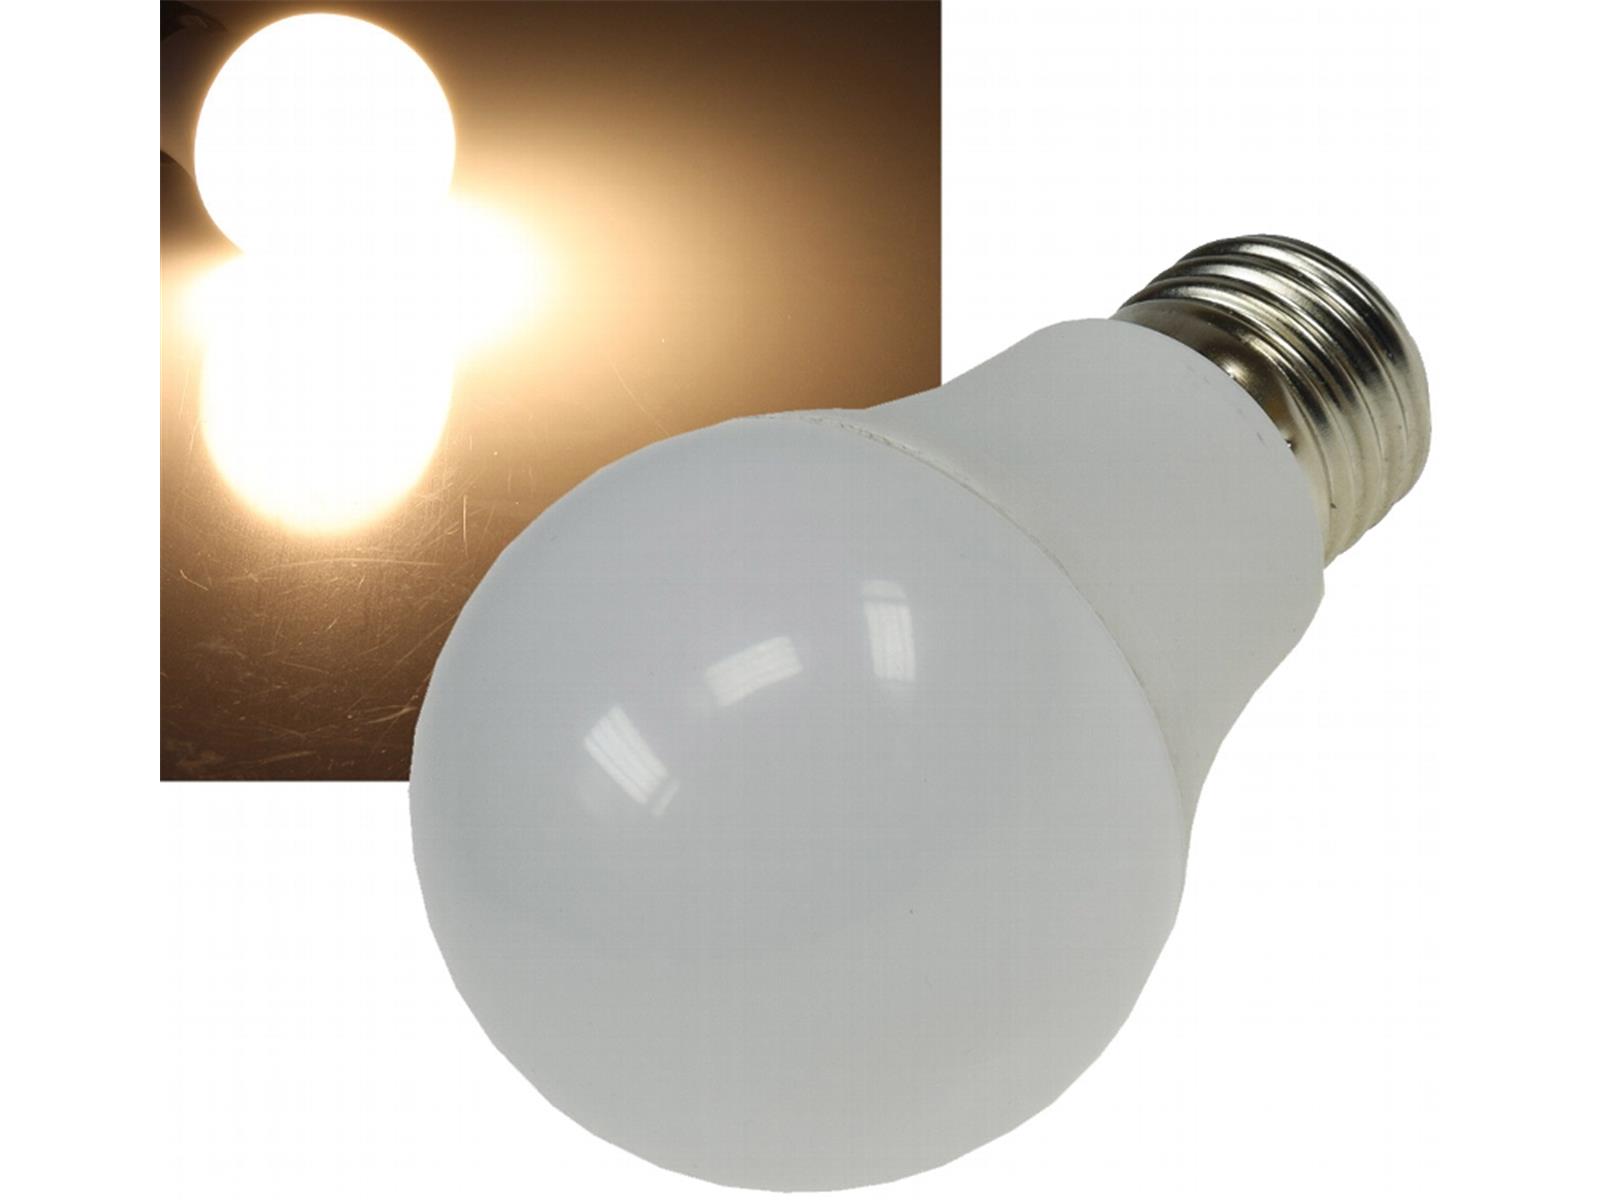 LED Glühlampe E27 "G70 COMODA" 3000k, 806lm, 230V/10W, 160°, warmweiß